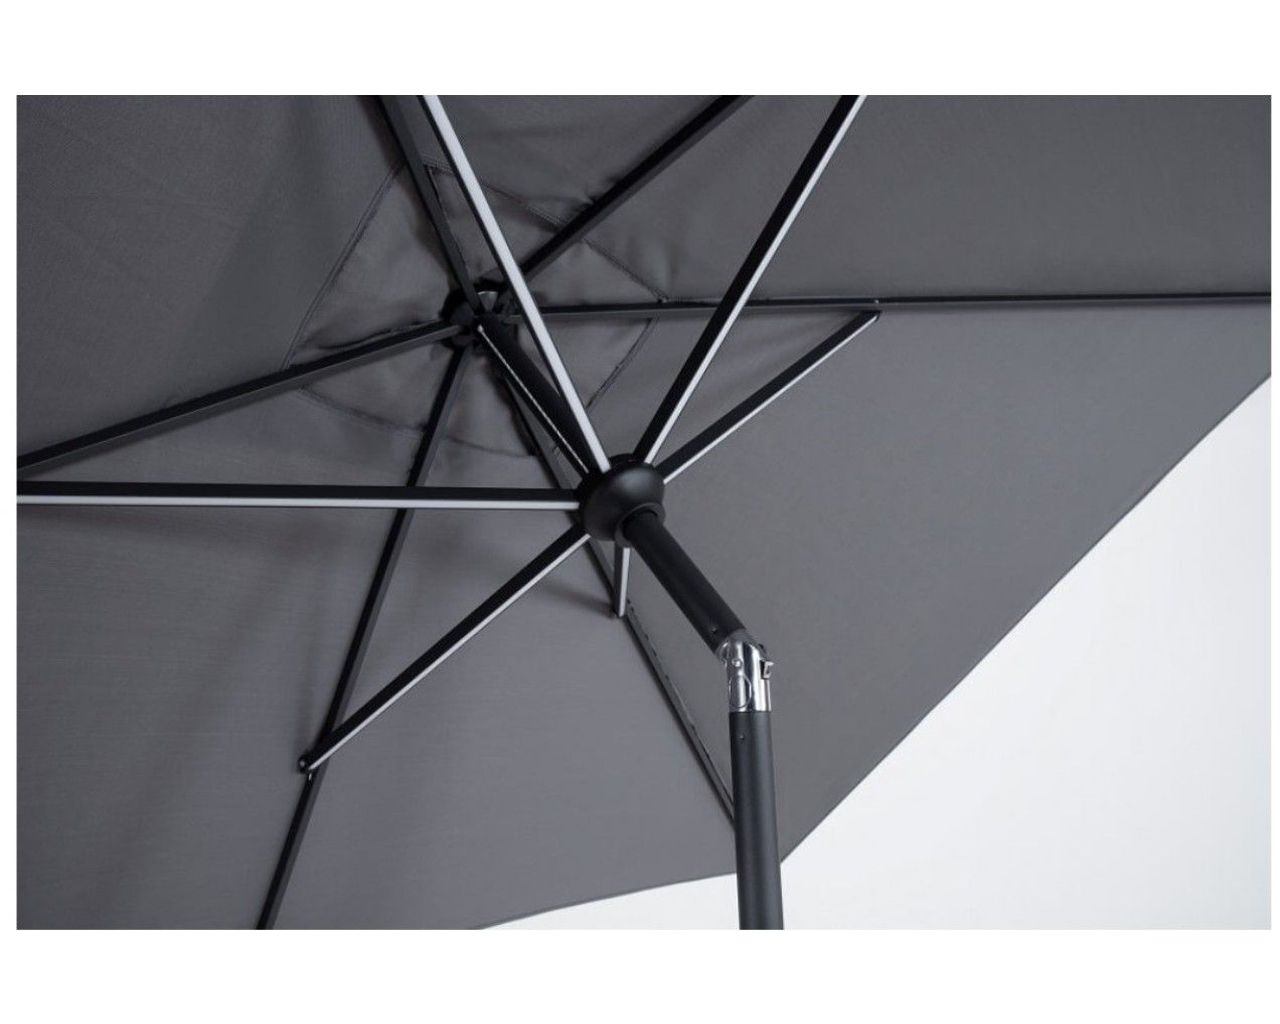 California 2 x 3m LED market umbrella Charcoal, , hi-res image number null